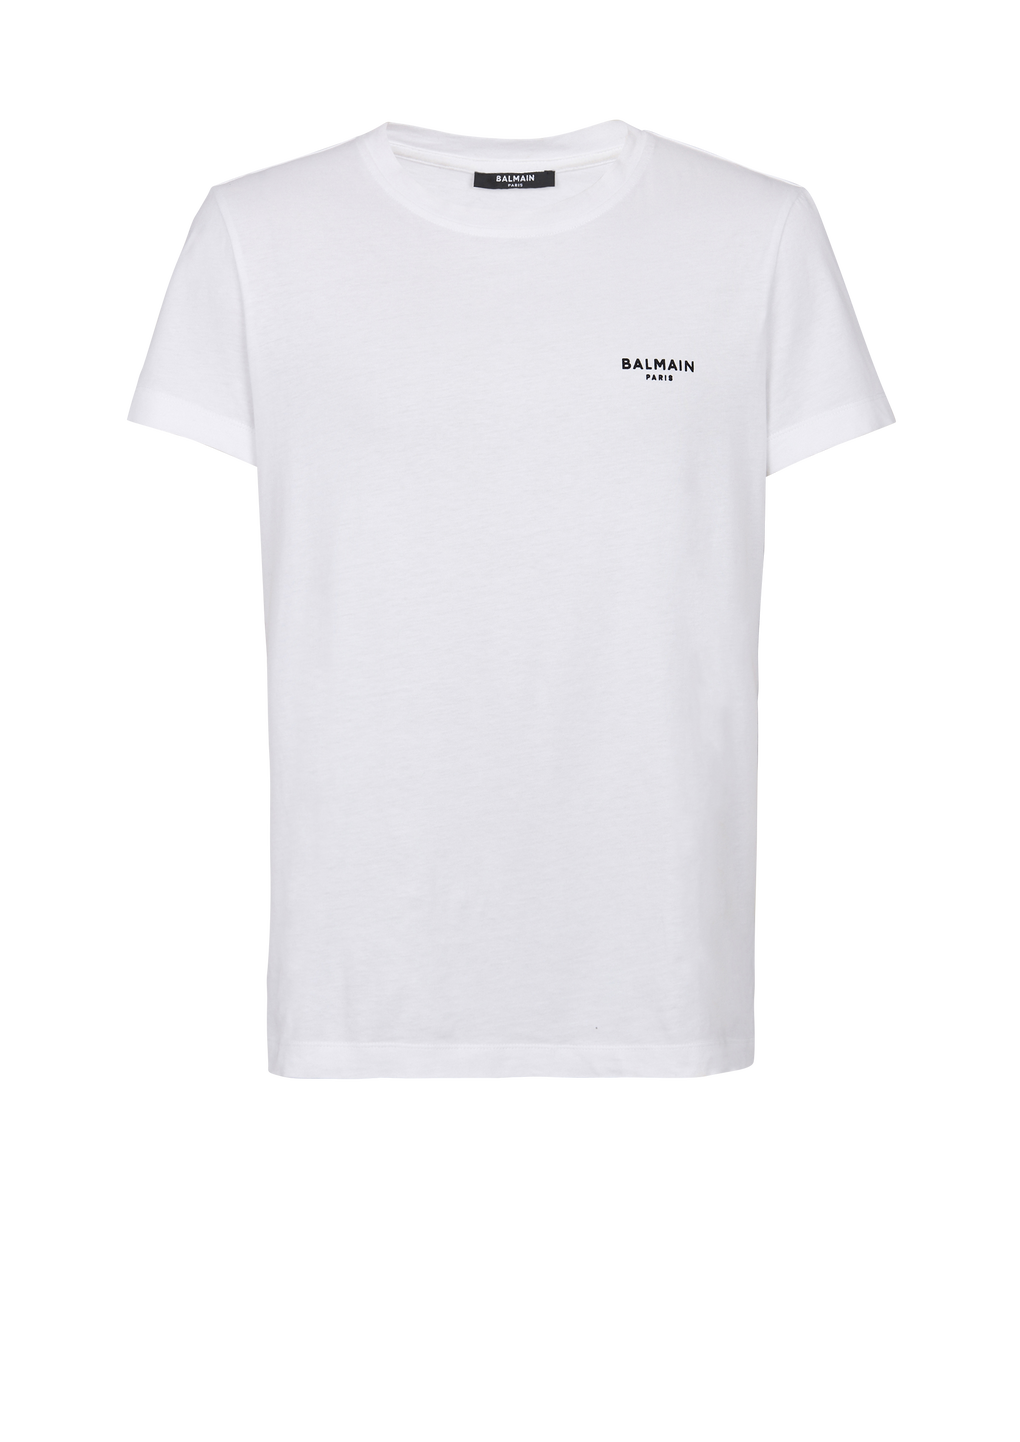 T-shirt in cotone eco-design con piccolo logo Balmain floccato, bianco, hi-res